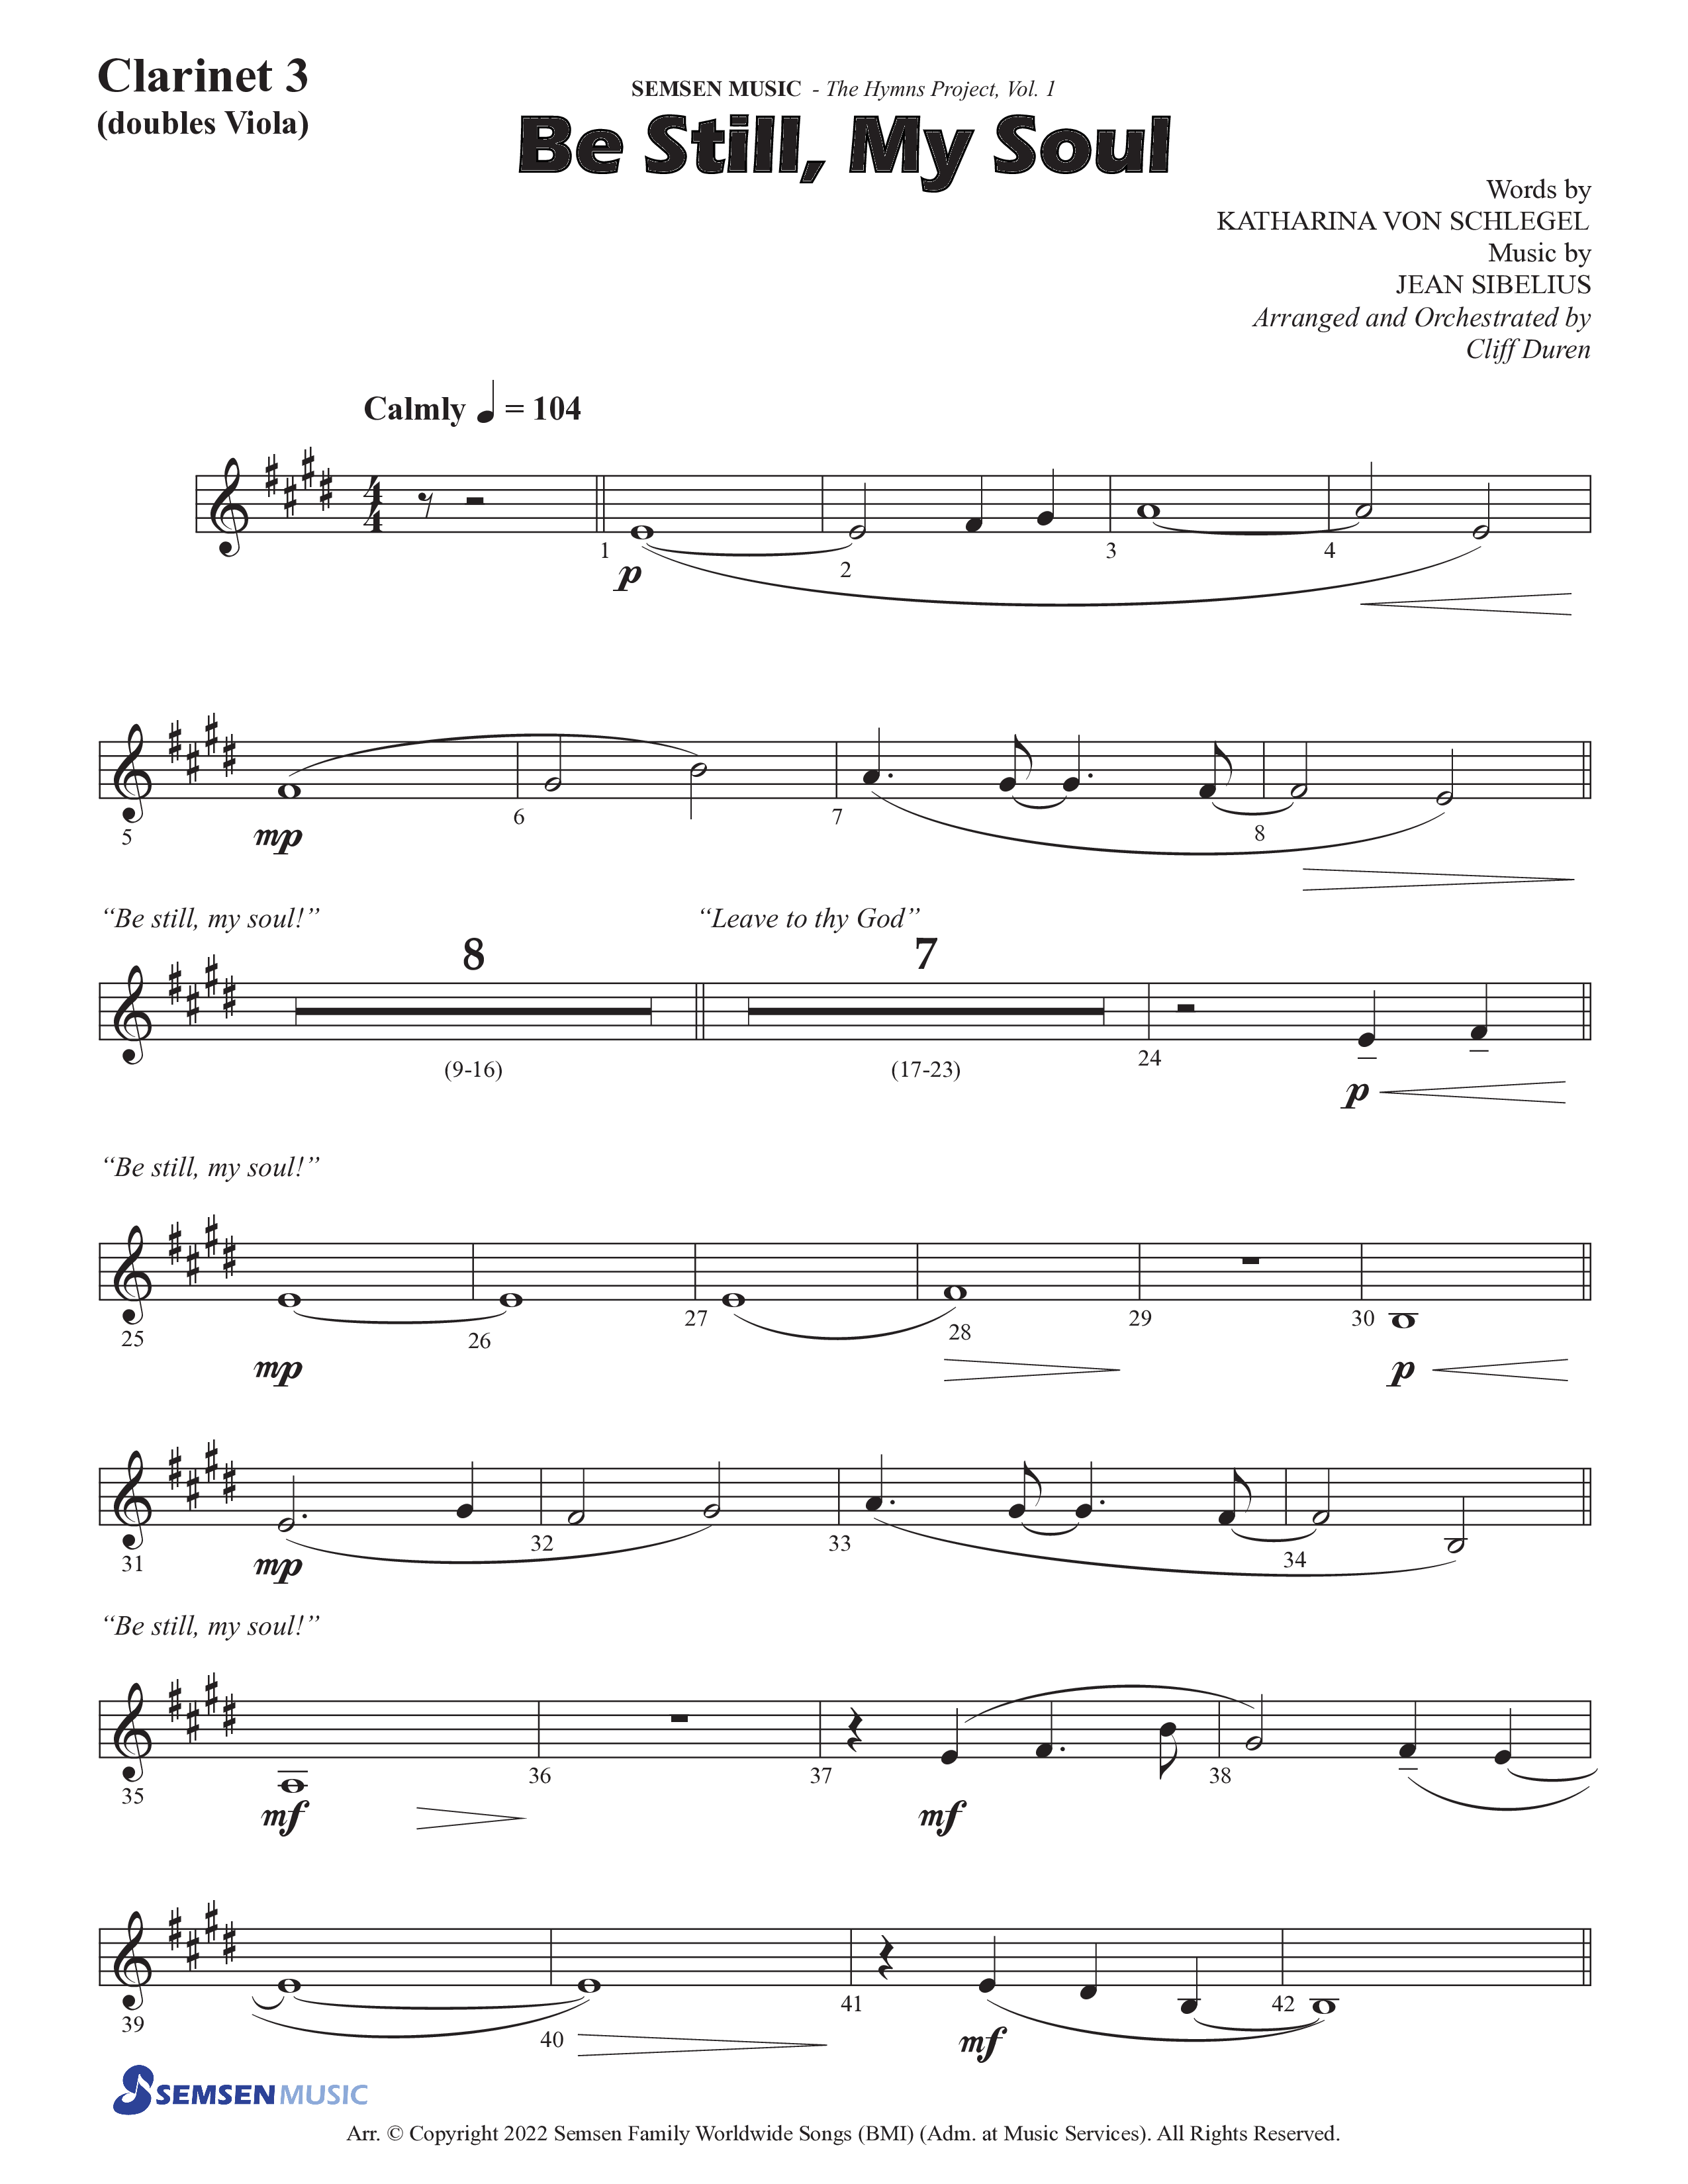 Be Still My Soul (Choral Anthem SATB) Clarinet 3 (Semsen Music / Arr. Cliff Duren)